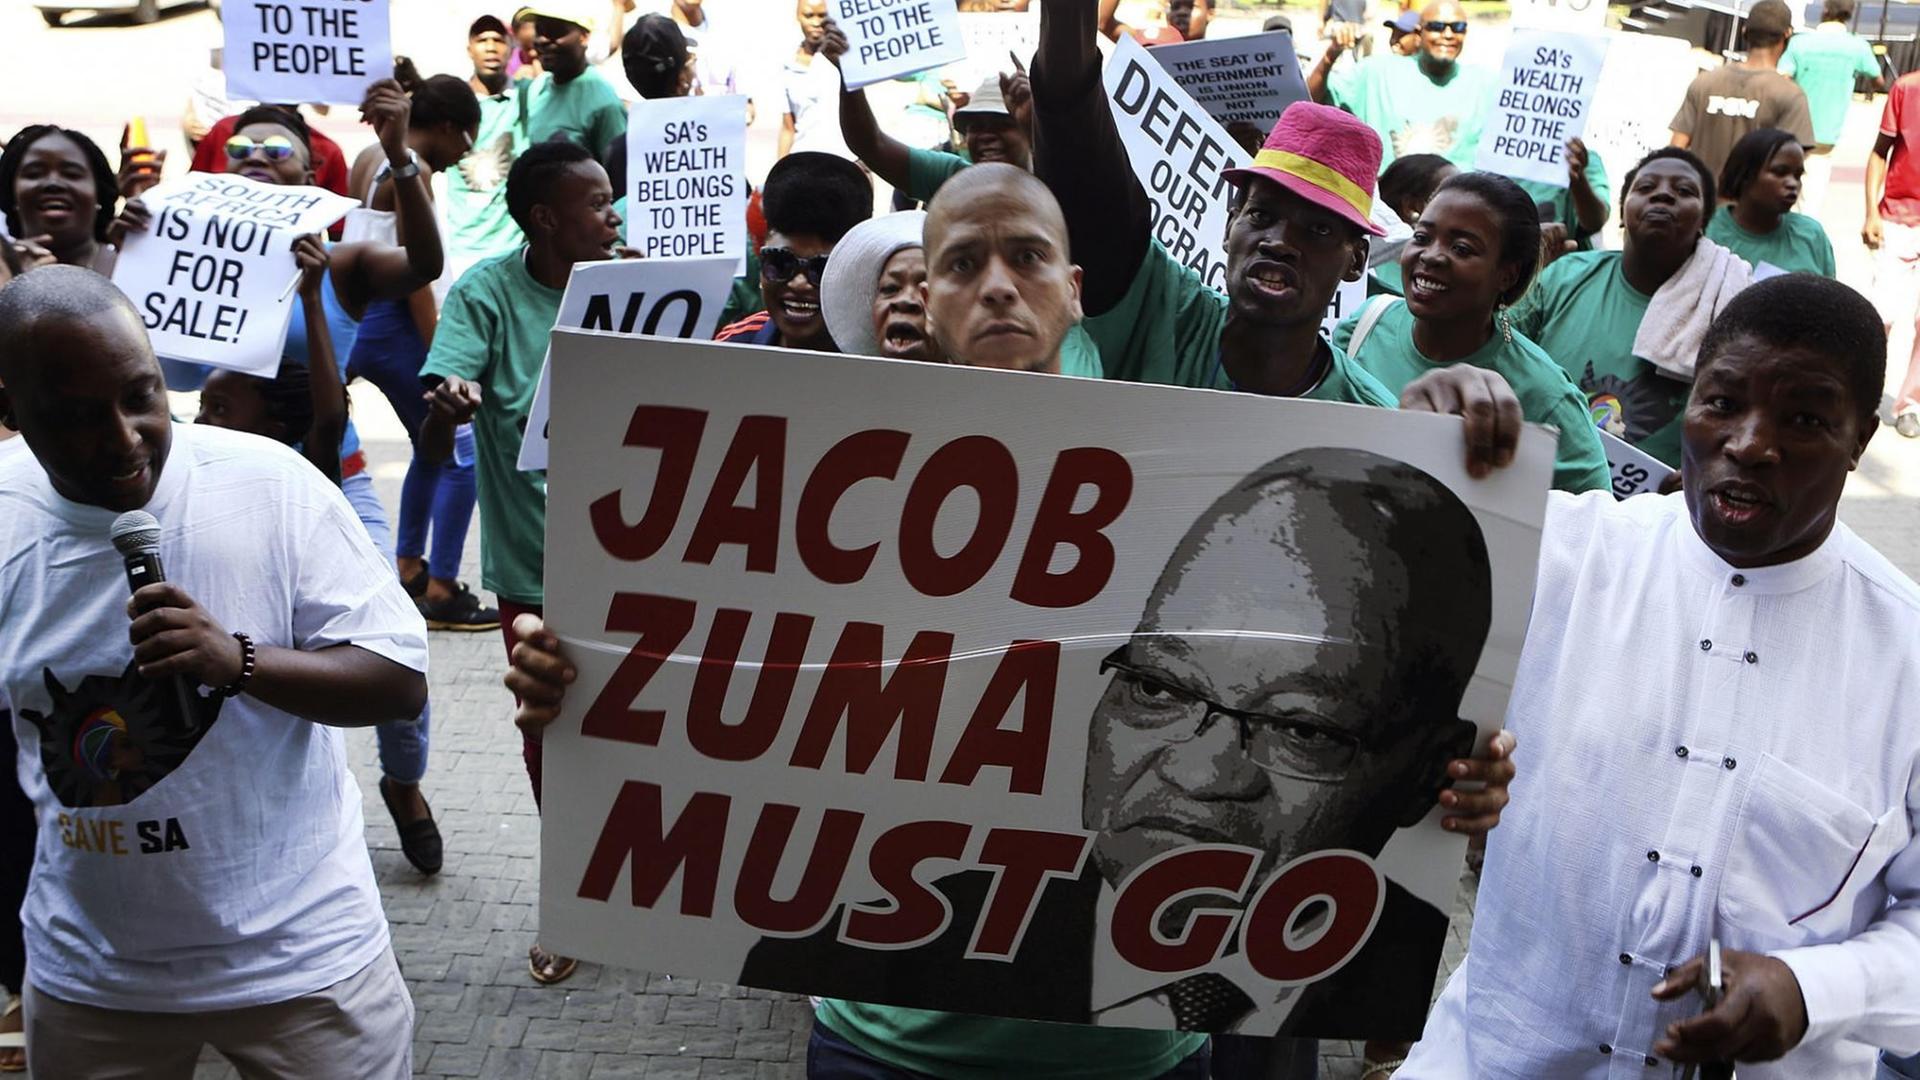 Demonstranten protestieren gegen den südafrikanischen Präsidenten Jacob Zuma; auf einem Transparent steht "Zuma must go".